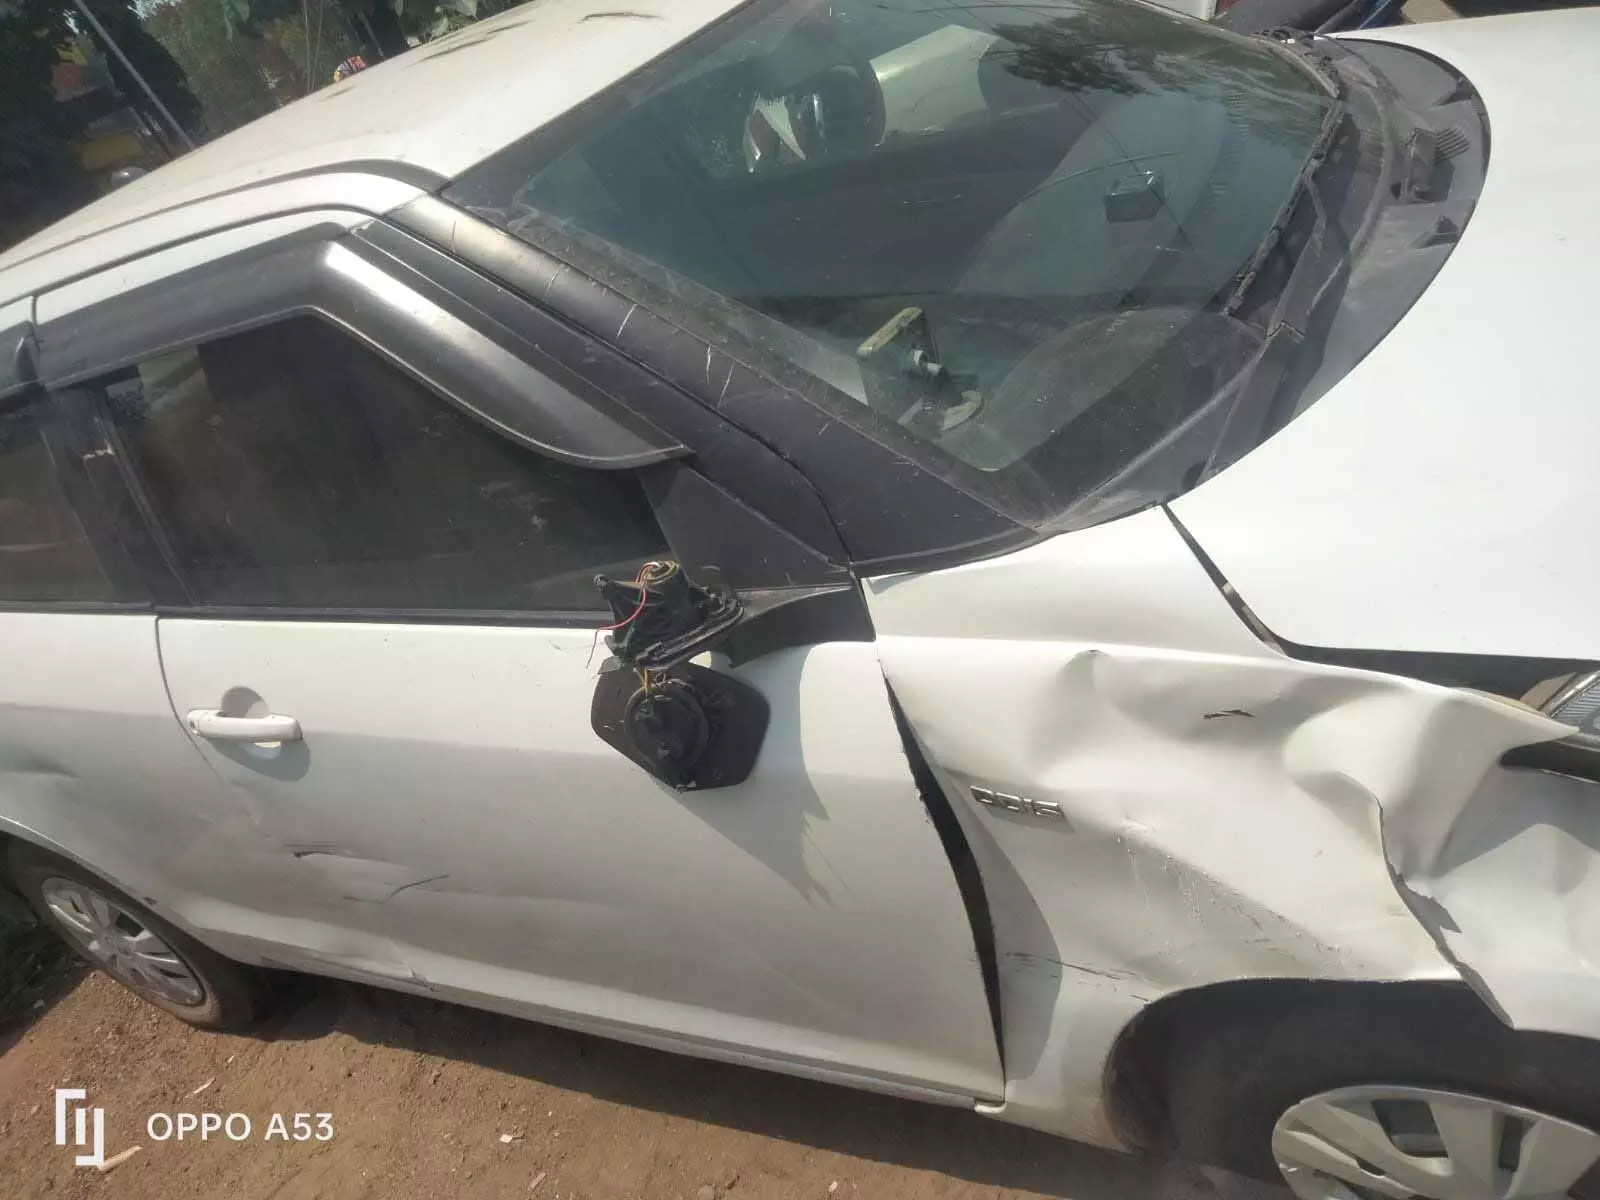 रायपुर में महिला आरक्षक ने नशे में दौड़ाई कार, बाइक को मारी ठोकर